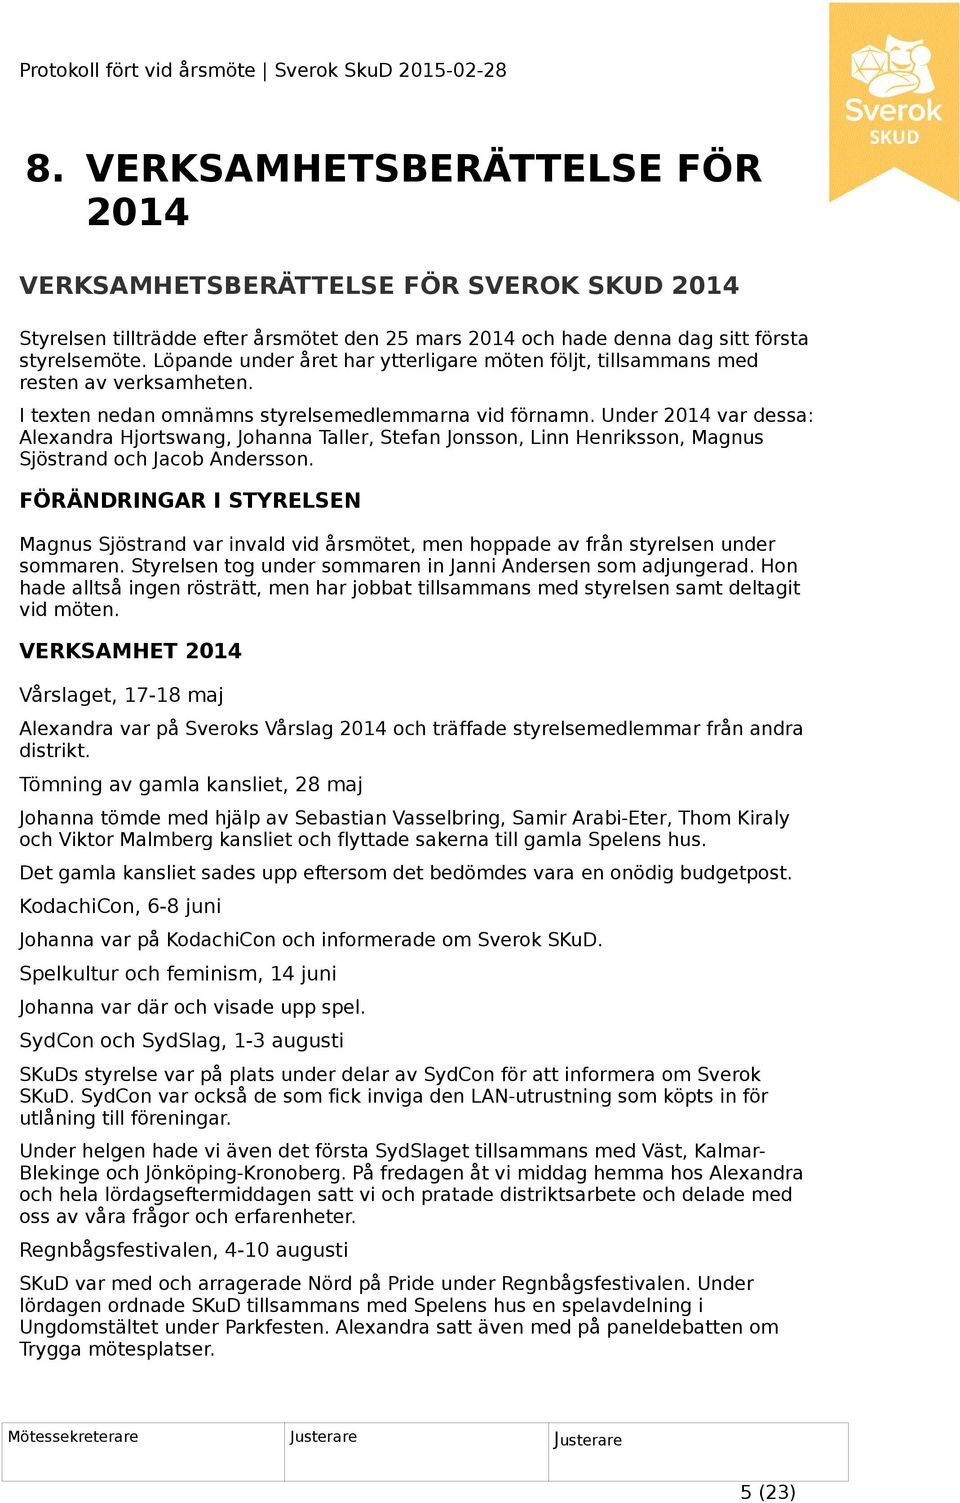 Under 2014 var dessa: Alexandra Hjortswang, Johanna Taller, Stefan Jonsson, Linn Henriksson, Magnus Sjöstrand och Jacob Andersson.